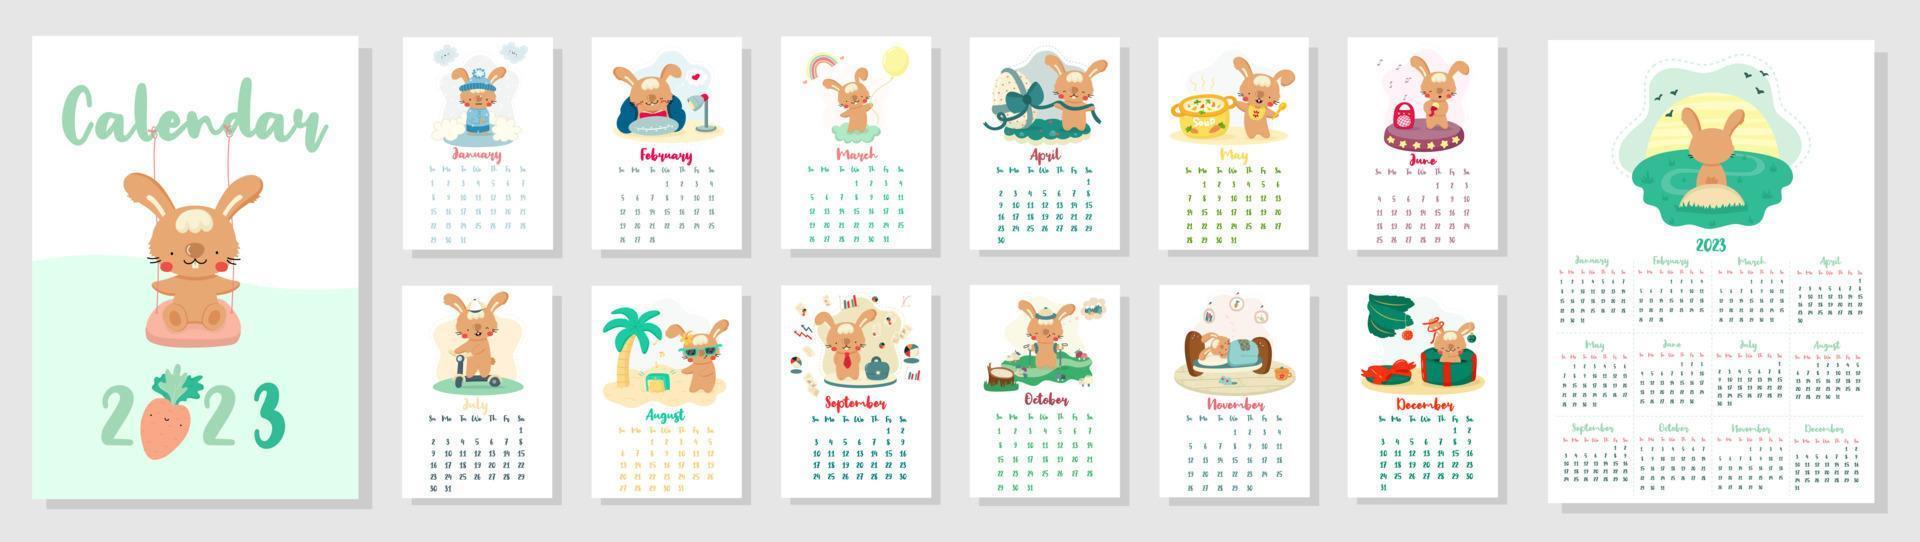 vertikal vektorkalender 2023 med söta tecknade kaniner. kaninens år enligt den kinesiska kalendern. omslag och 12 månaders sidor. veckan börjar på söndag. för storlek a4,a5,a3 vektor